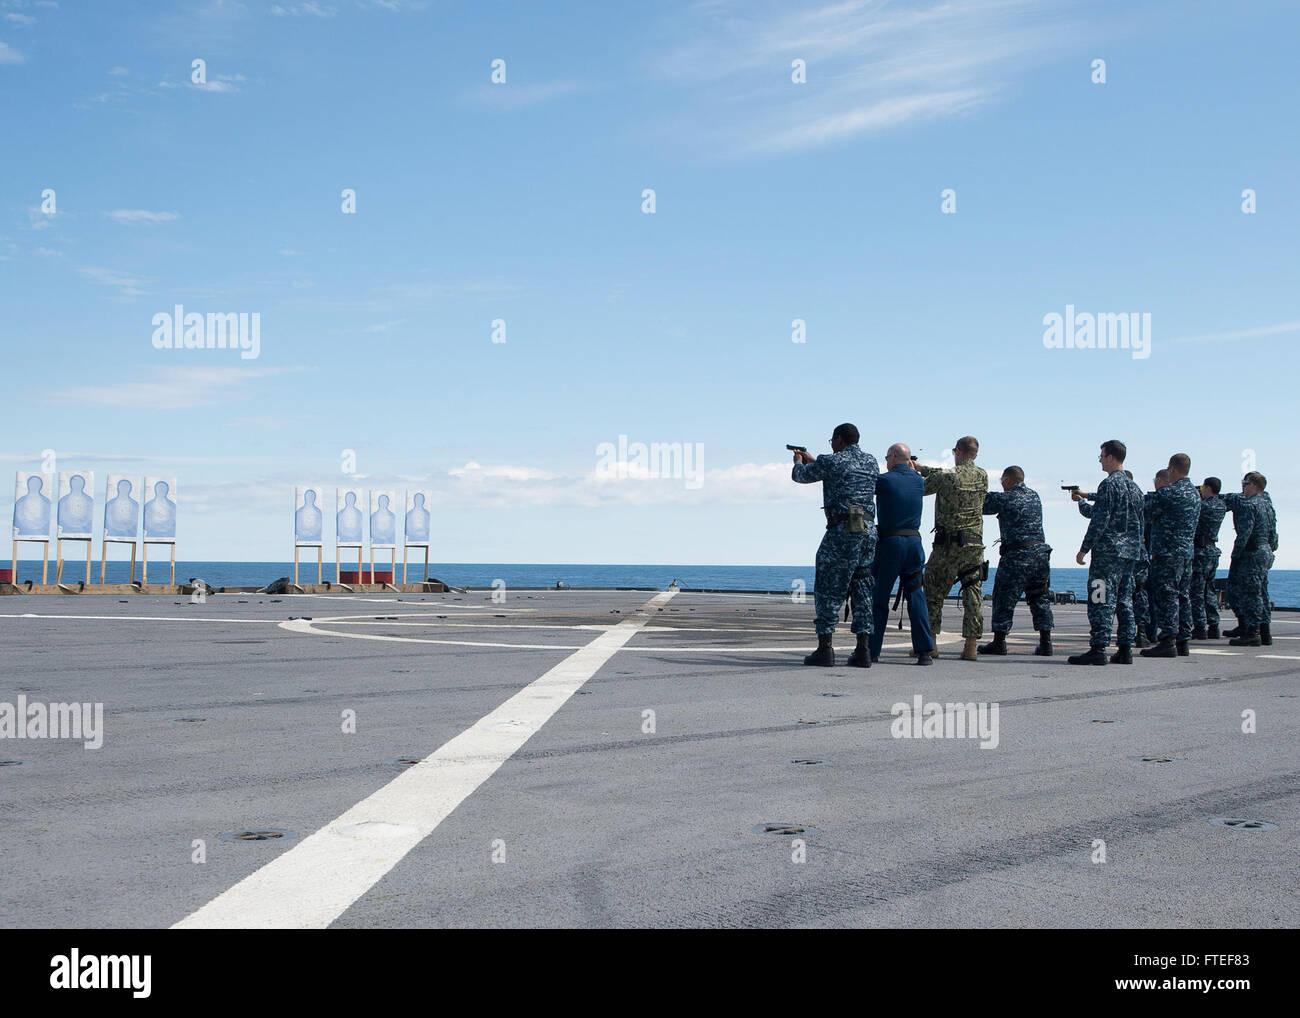 140629-N-EZ054-028-Nordsee (29. Juni 2014) - Teilnahme die M9 Pistole Qualifikation schießen auf Mount Whitney Flugdeck Segler, der 6. Flotte Kommando- und Schiff USS Mount Whitney (LCC20) zugewiesen. Mount Whitney, Gridley in Gaeta, Italien, ist den USA 6. Flotte Flaggschiff und arbeitet mit einer kombinierten Mannschaft von US-Segler und Military Sealift Command (MSC) Zivildienst Seeleute. (Foto: U.S. Navy Mass Communication Specialist 3. Klasse Luis R. Chavez Jr/freigegeben) Stockfoto